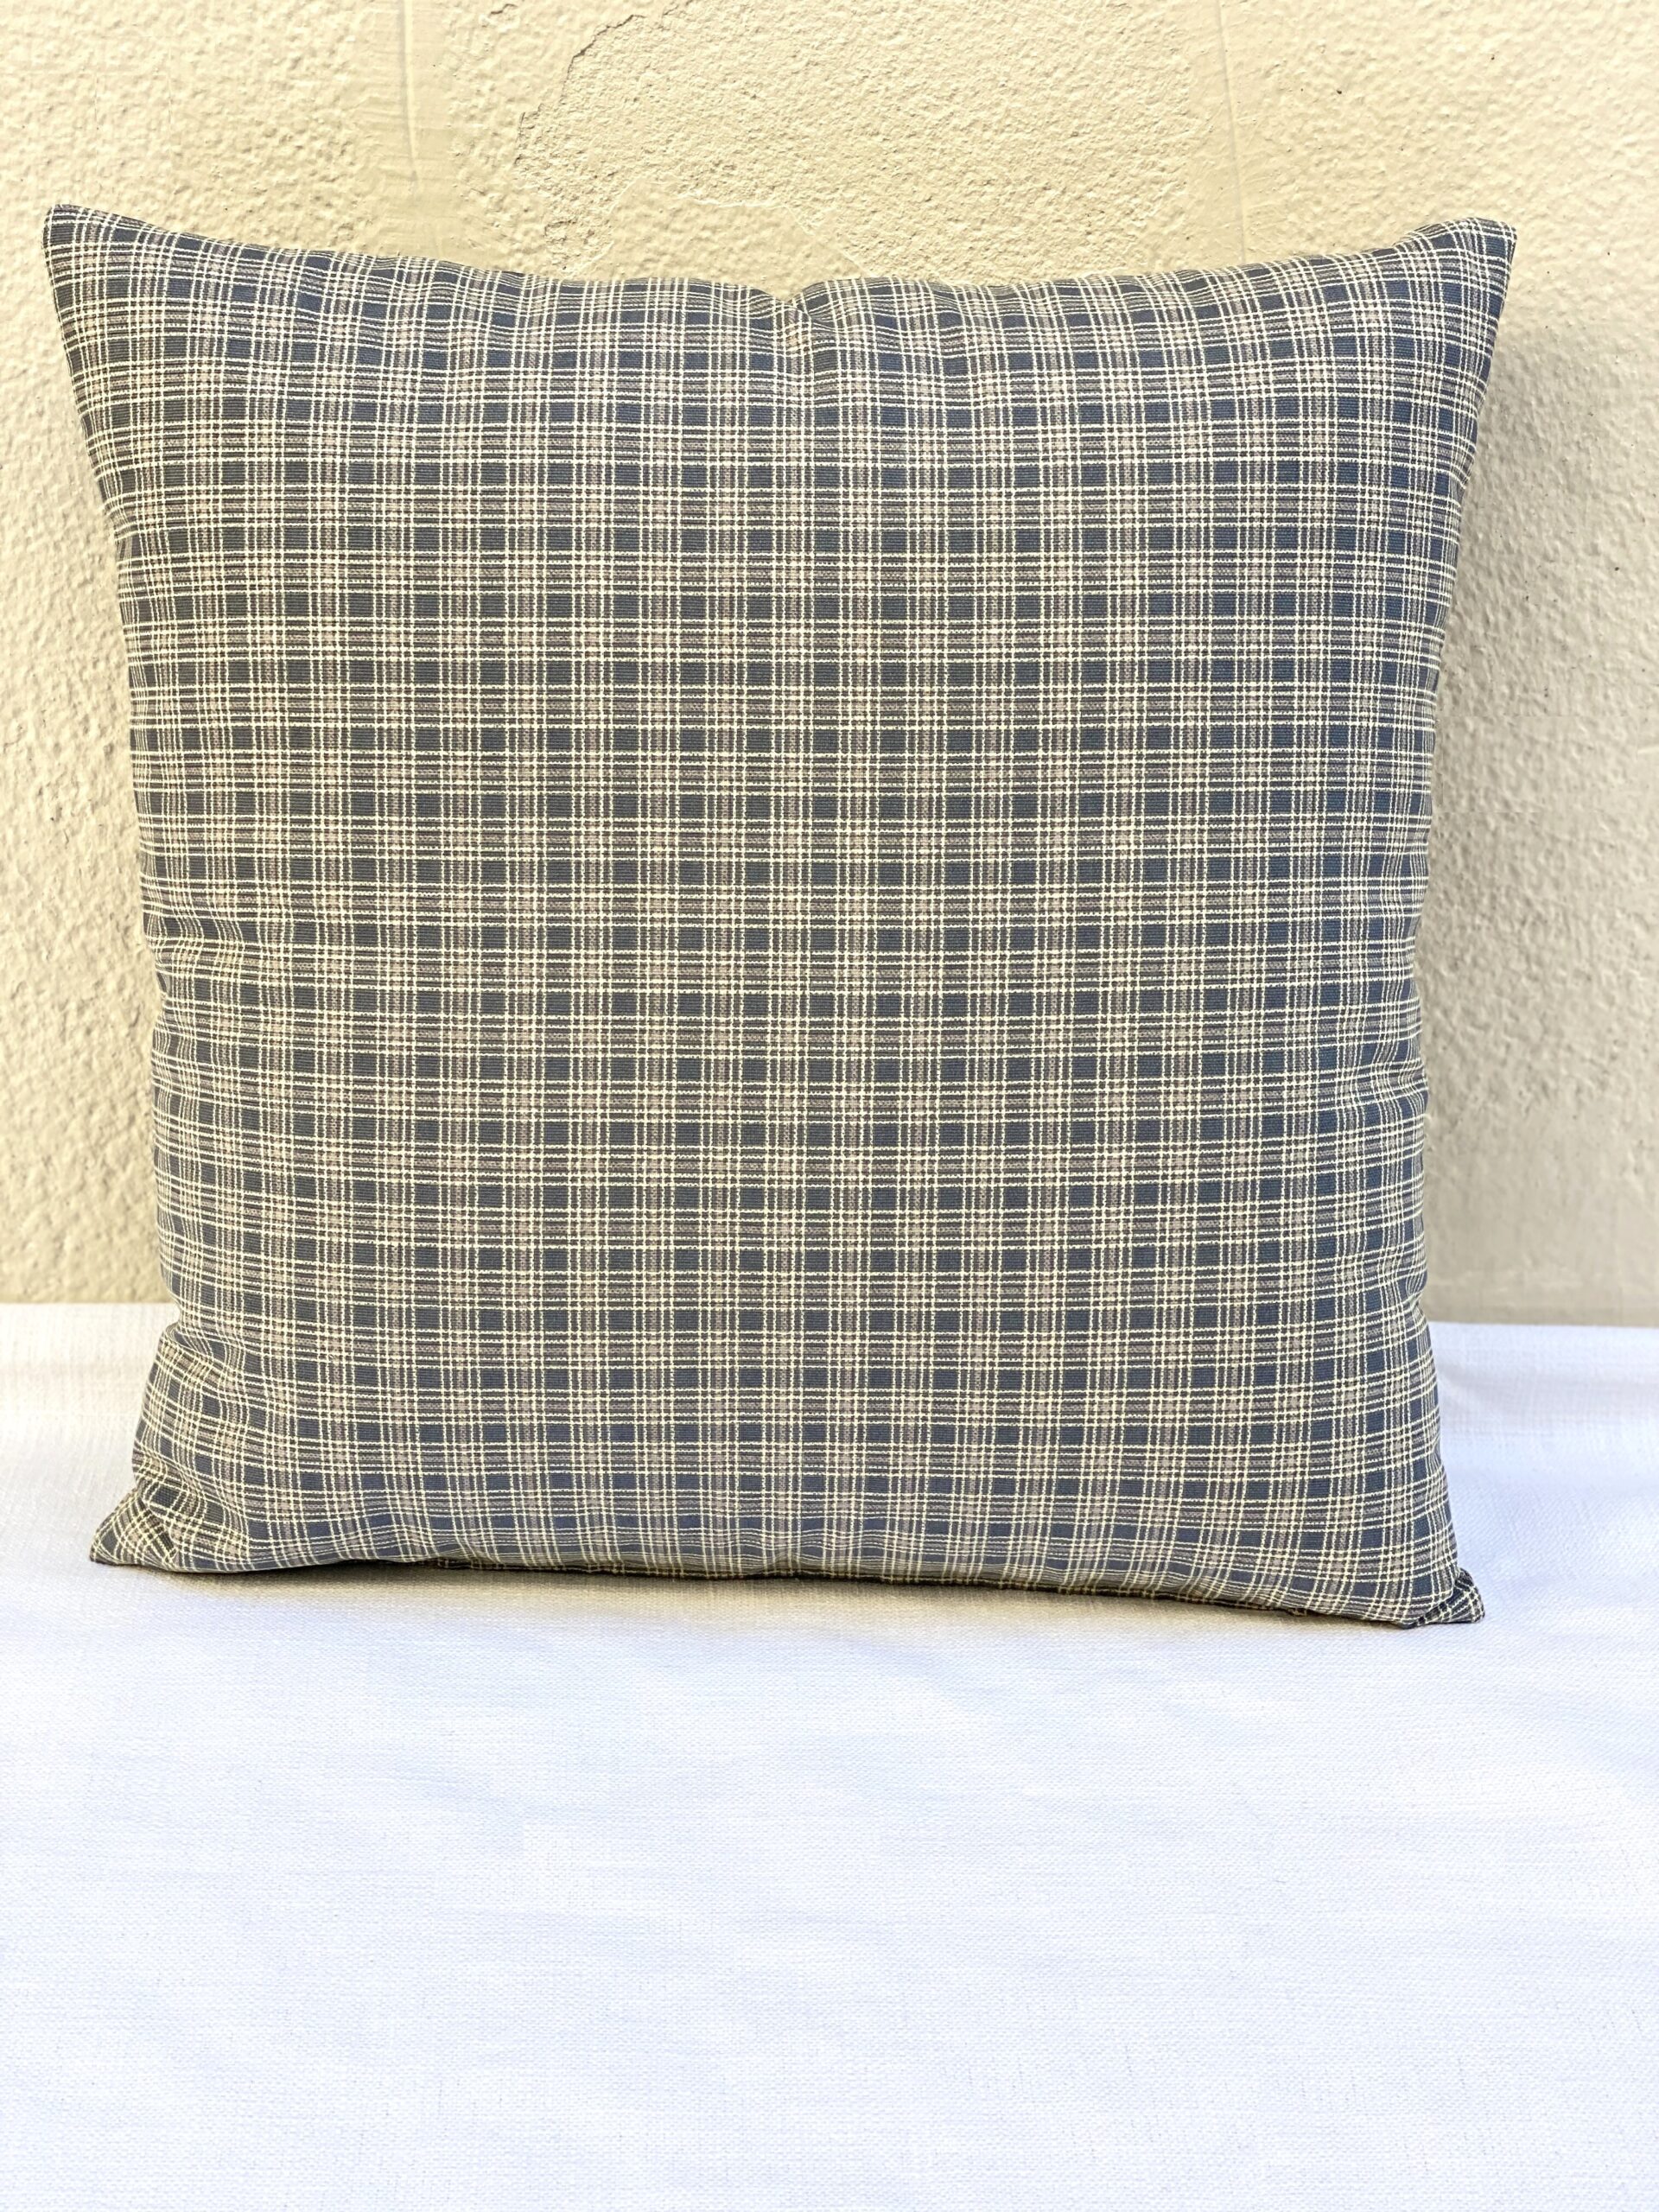 Plaid Blue Pillows